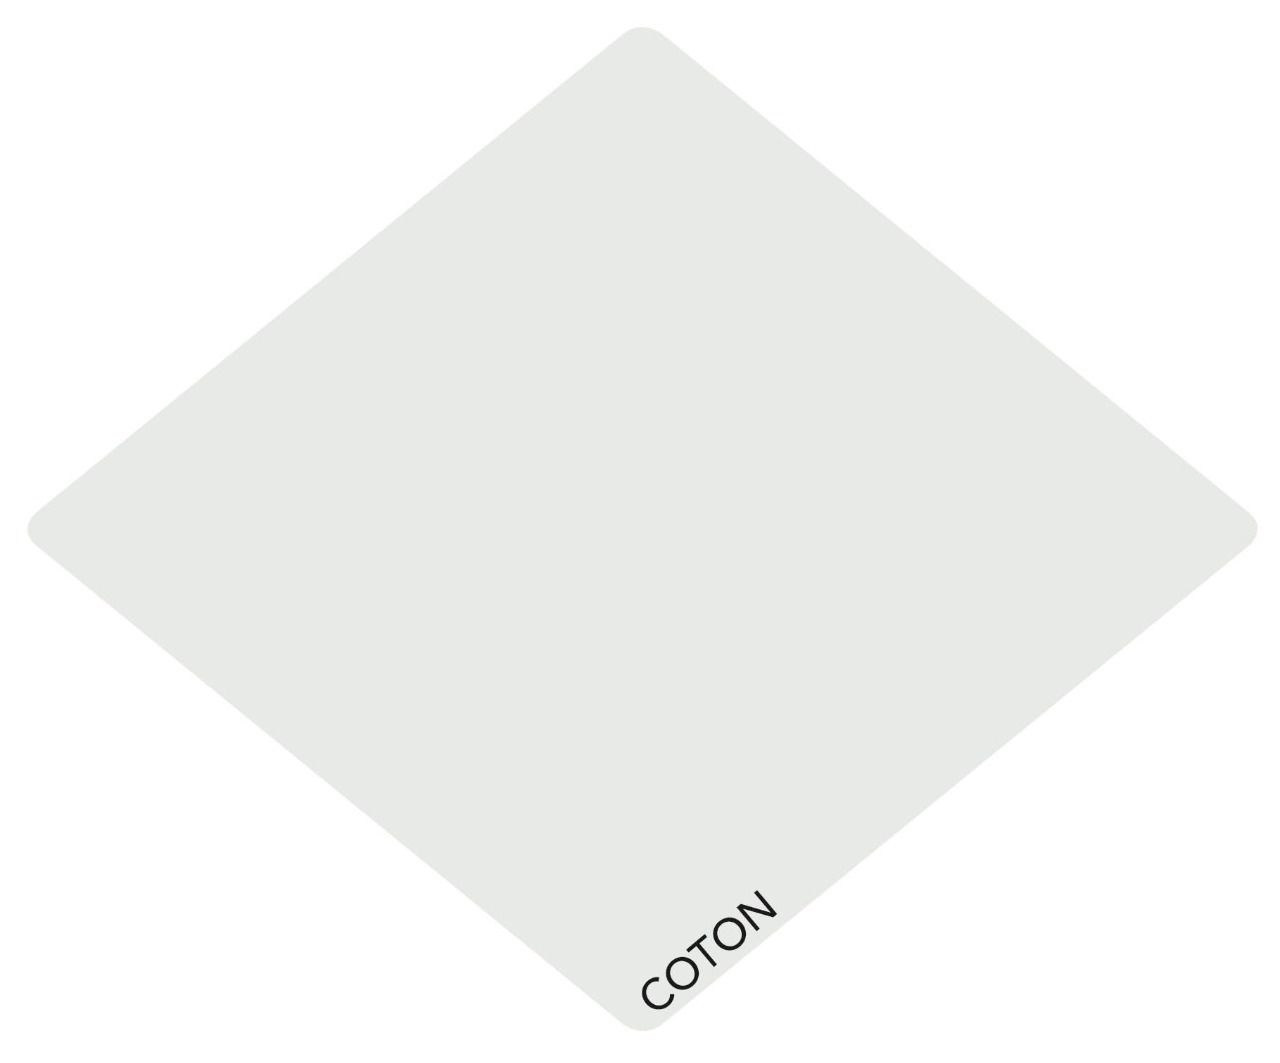 ColorVelours COTON